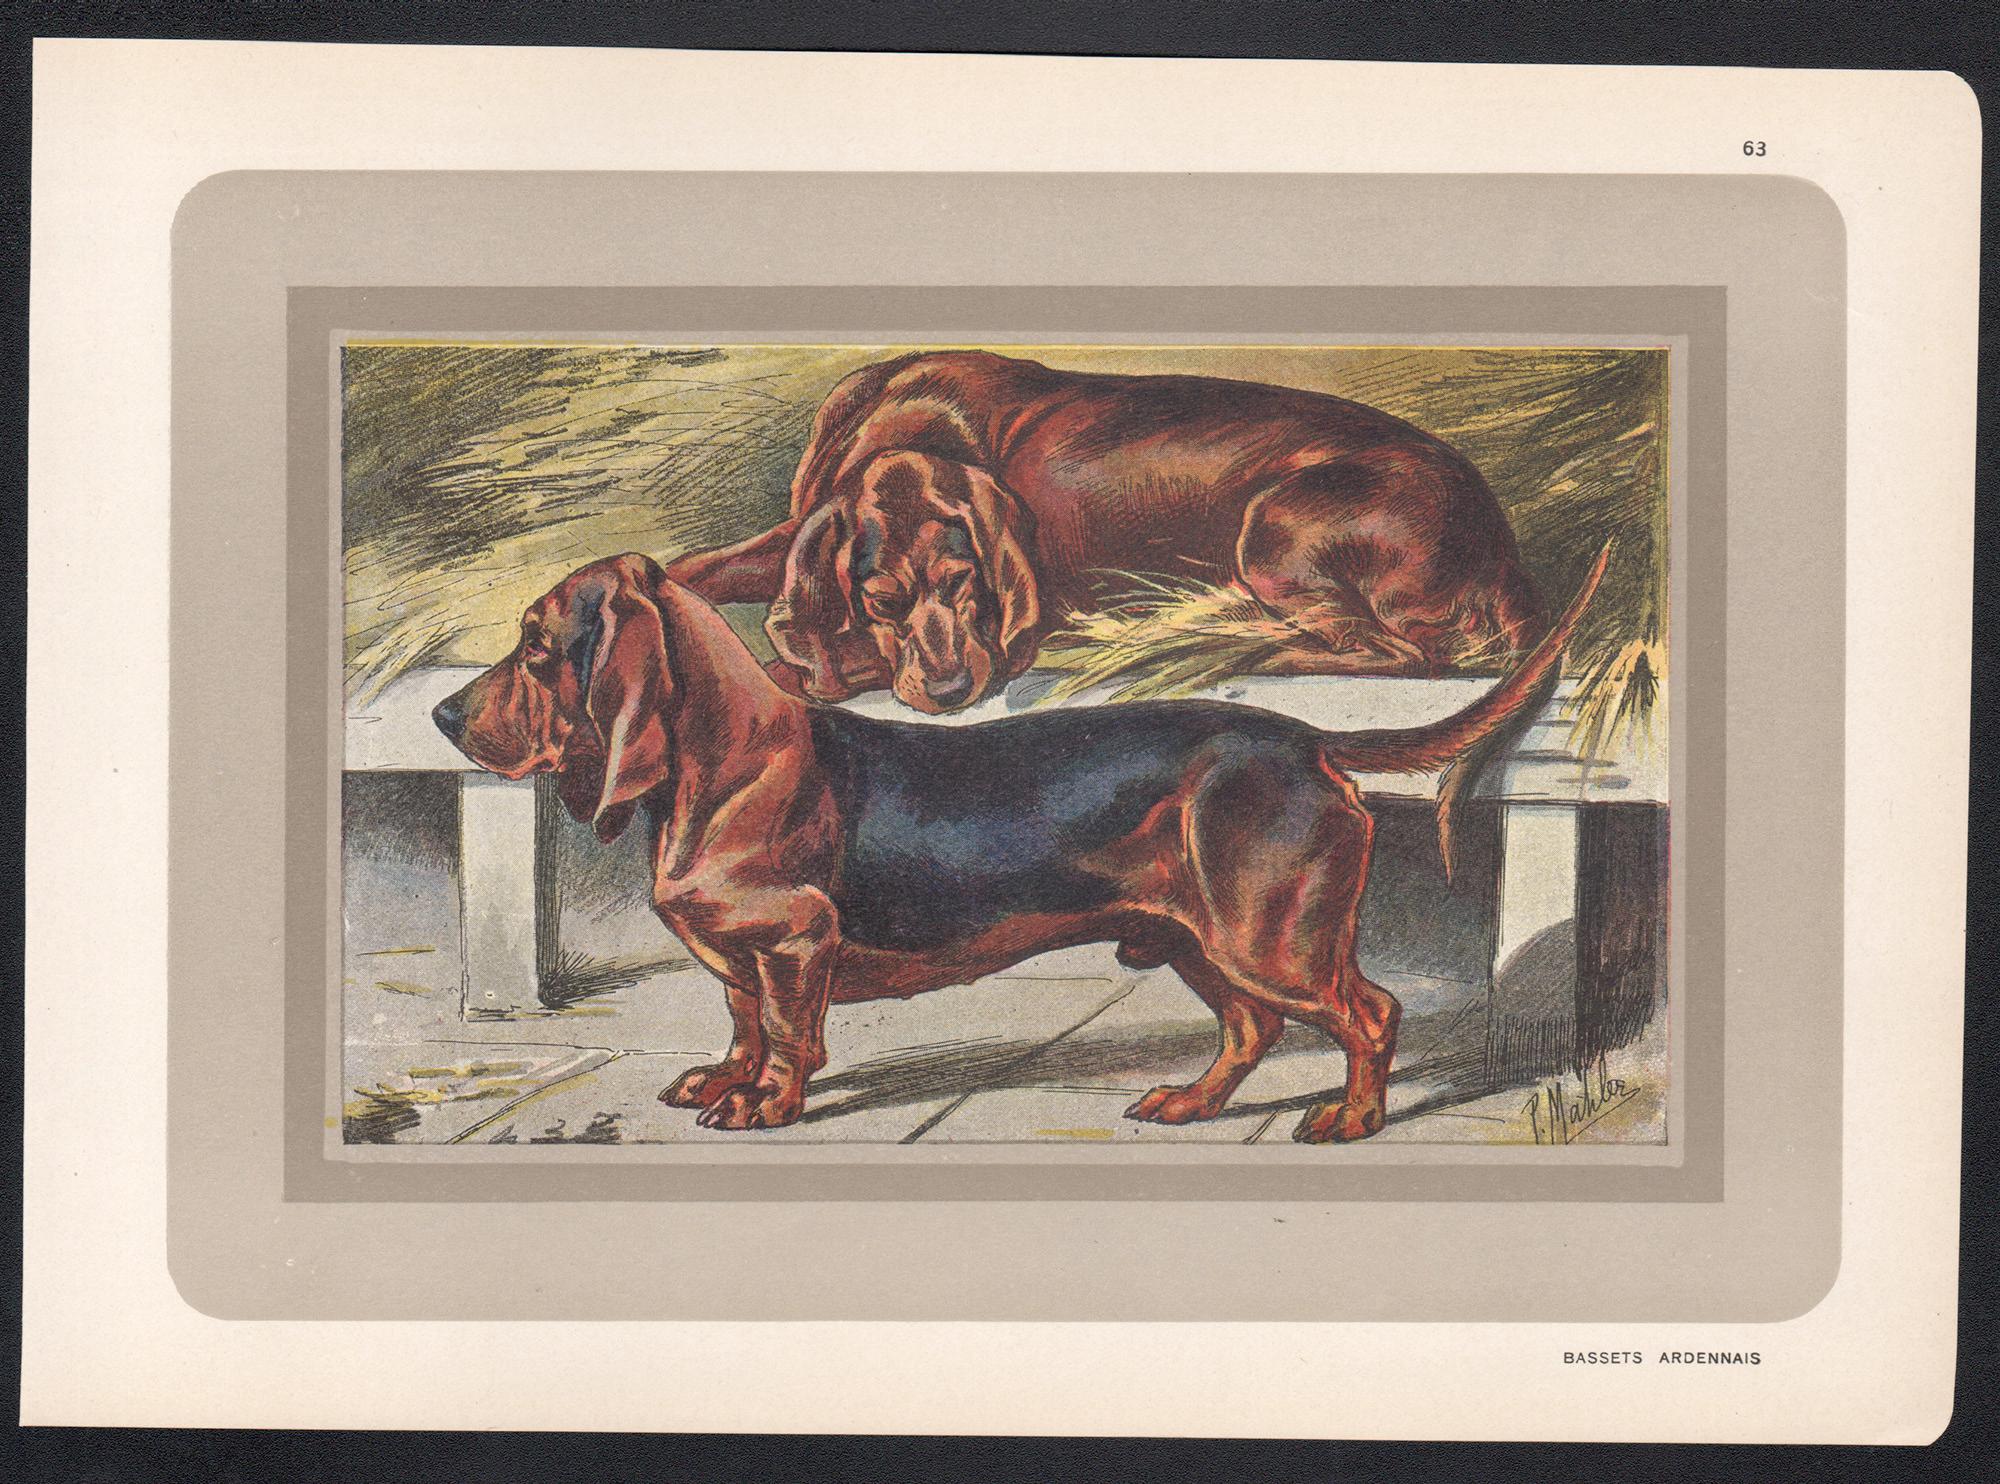 Bassets Ardennais, Französischer Chromolithographiedruck mit Hund, 1930er-Jahre – Print von P. Mahler